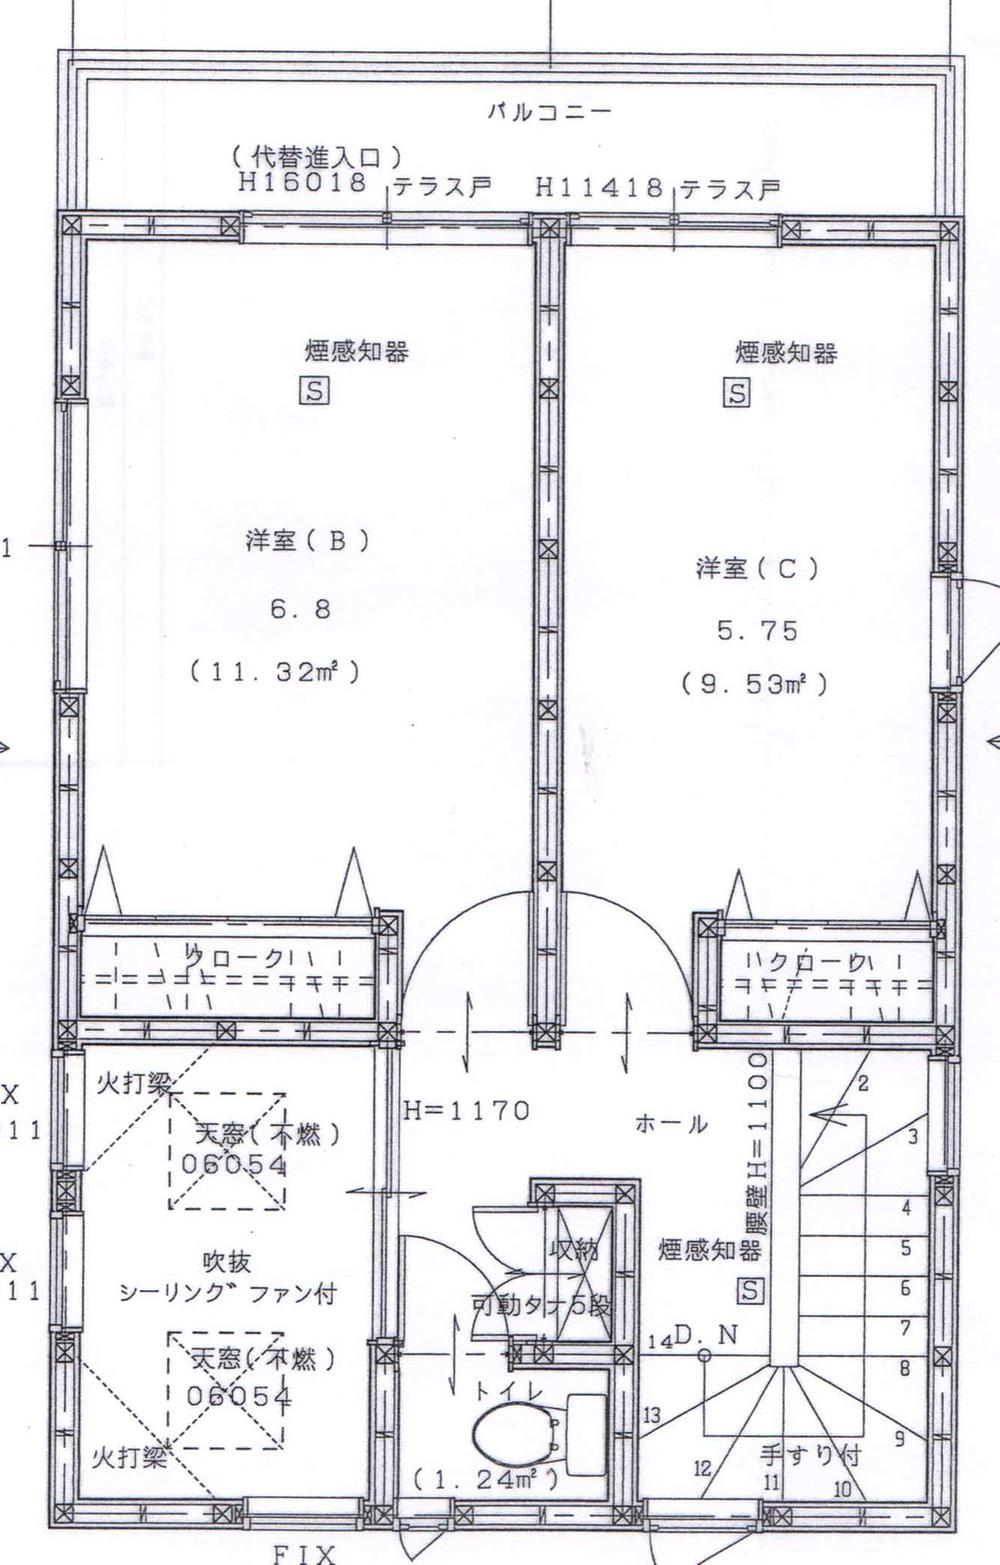 Floor plan. 35,800,000 yen, 4LDK, Land area 66.11 sq m , Building area 99 sq m 3 floor